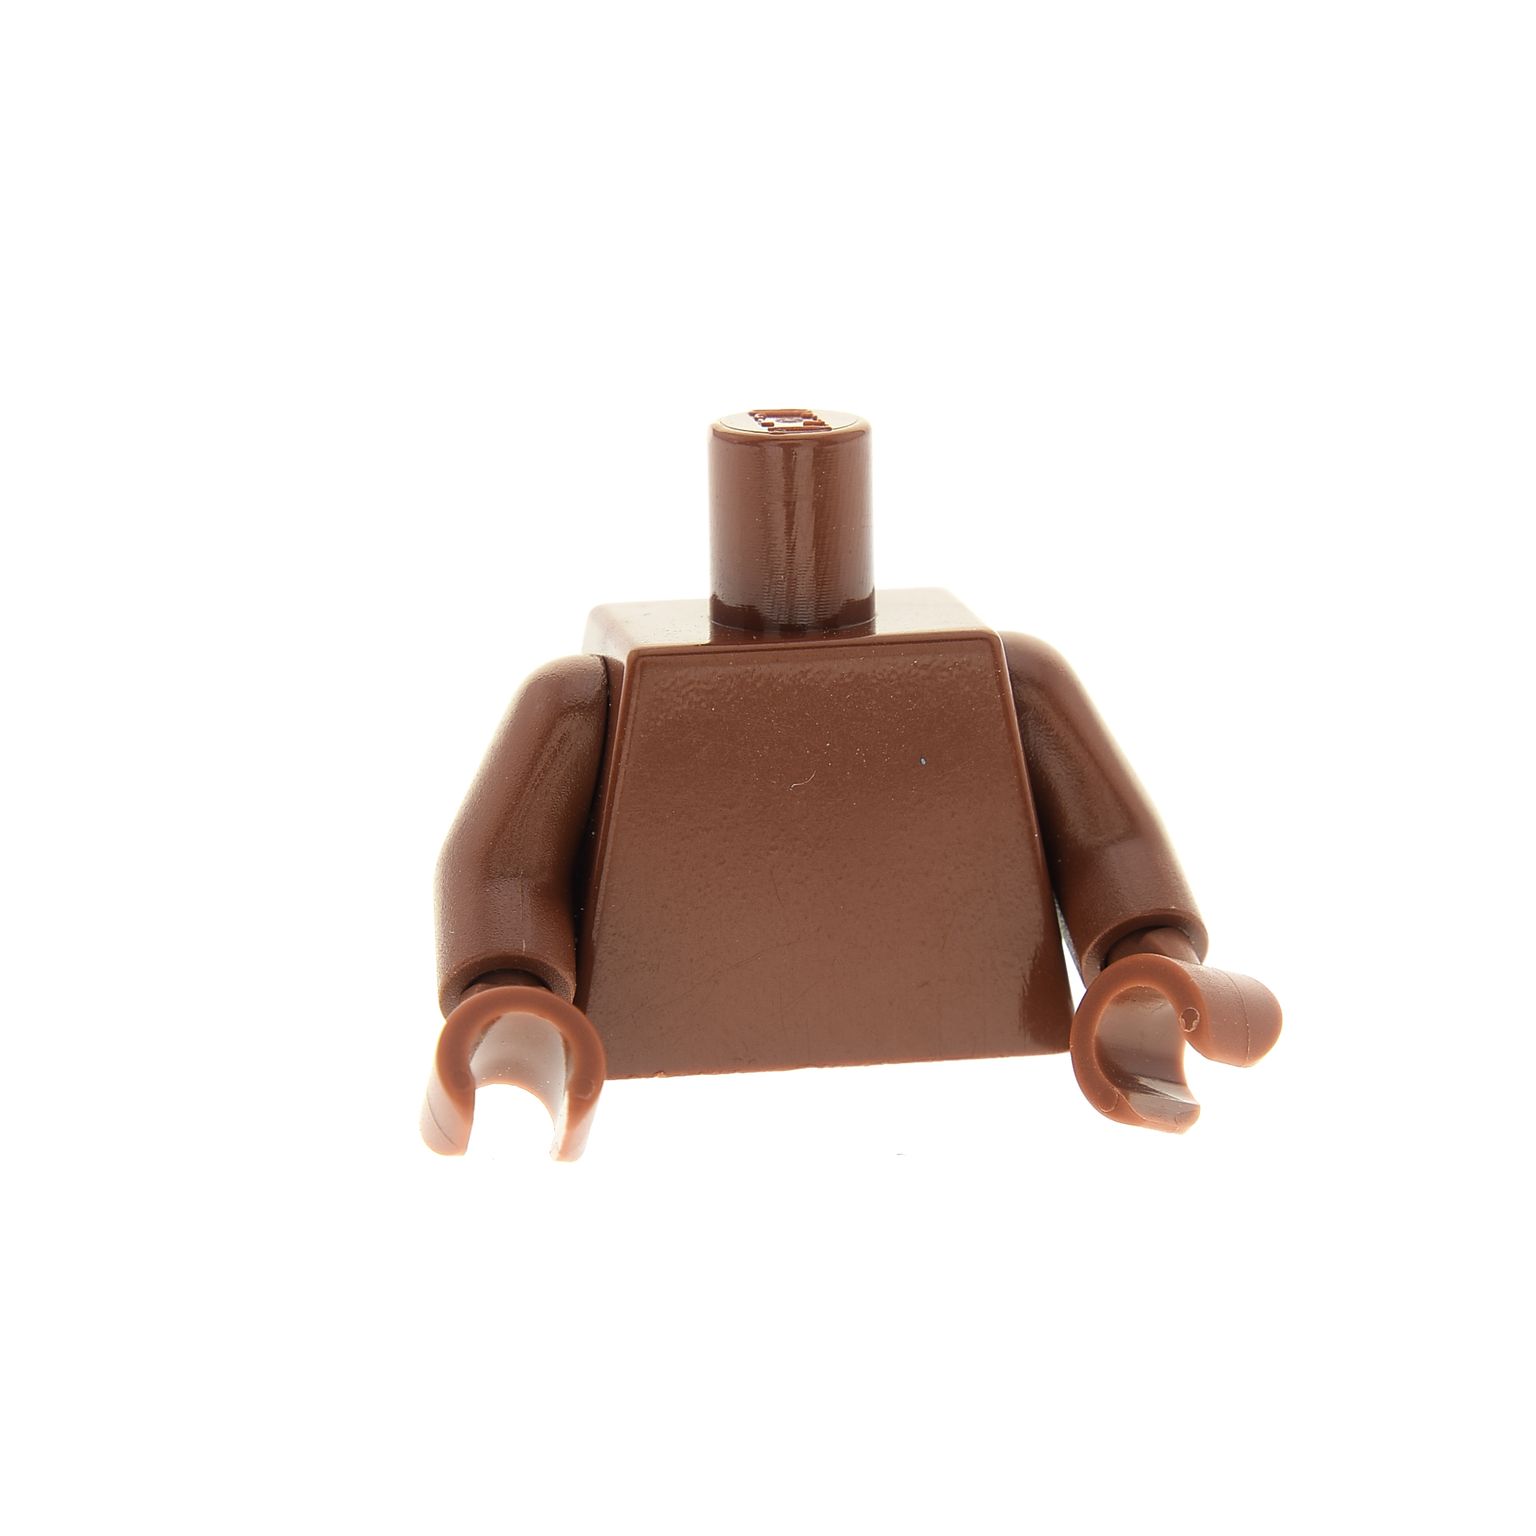 Lego Star Wars Figur sw237 Ewok Wicket 8038 